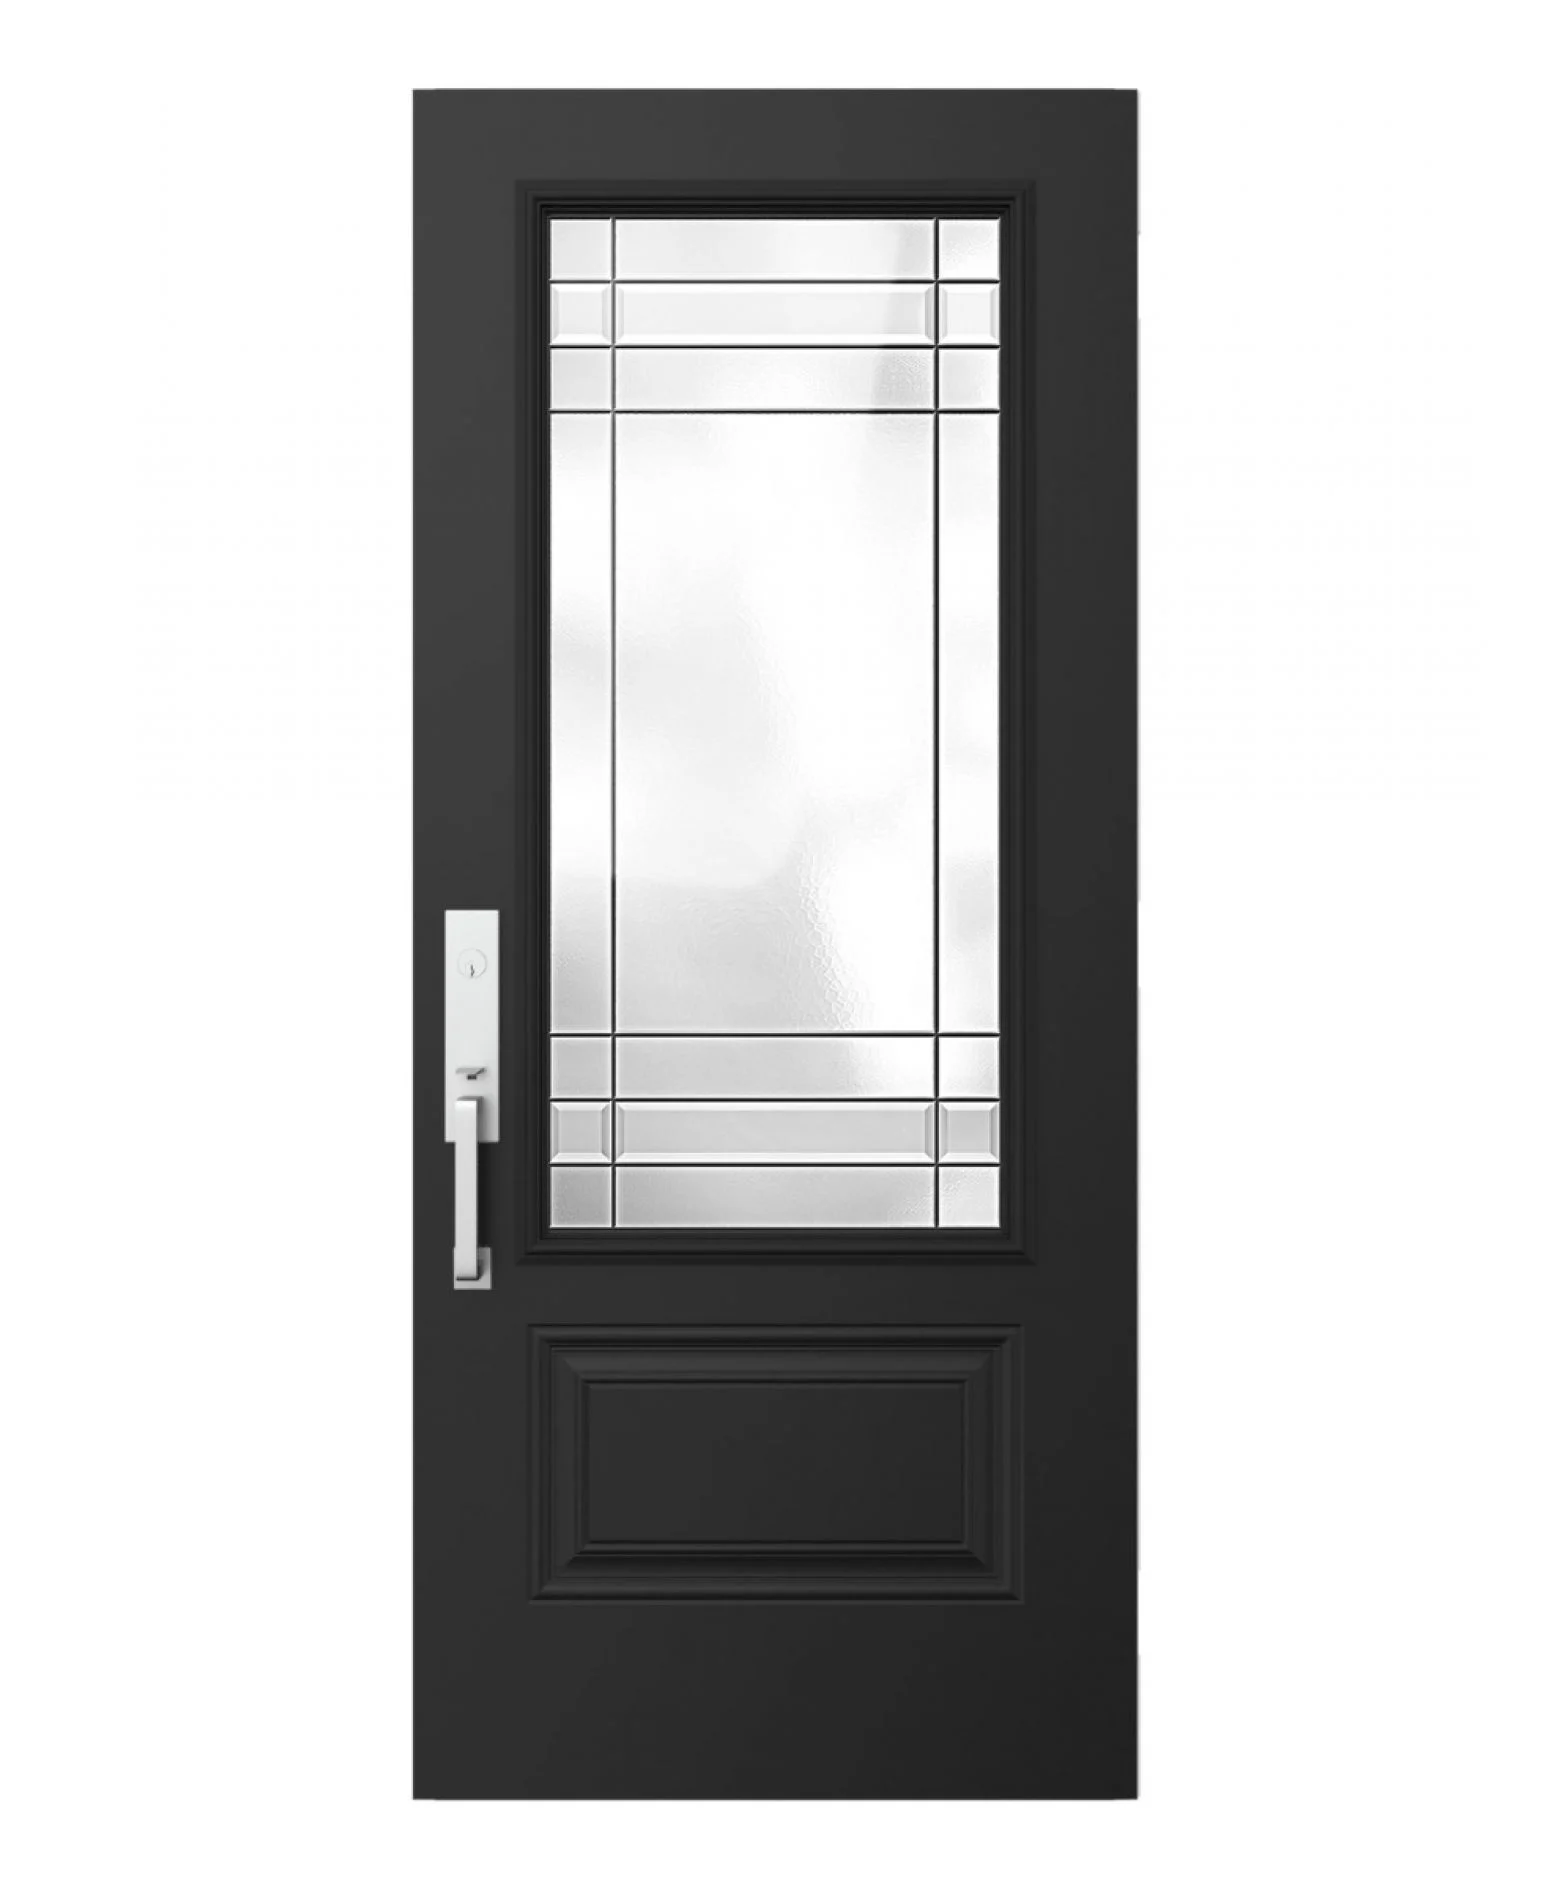 Doors for contractor - Celeste